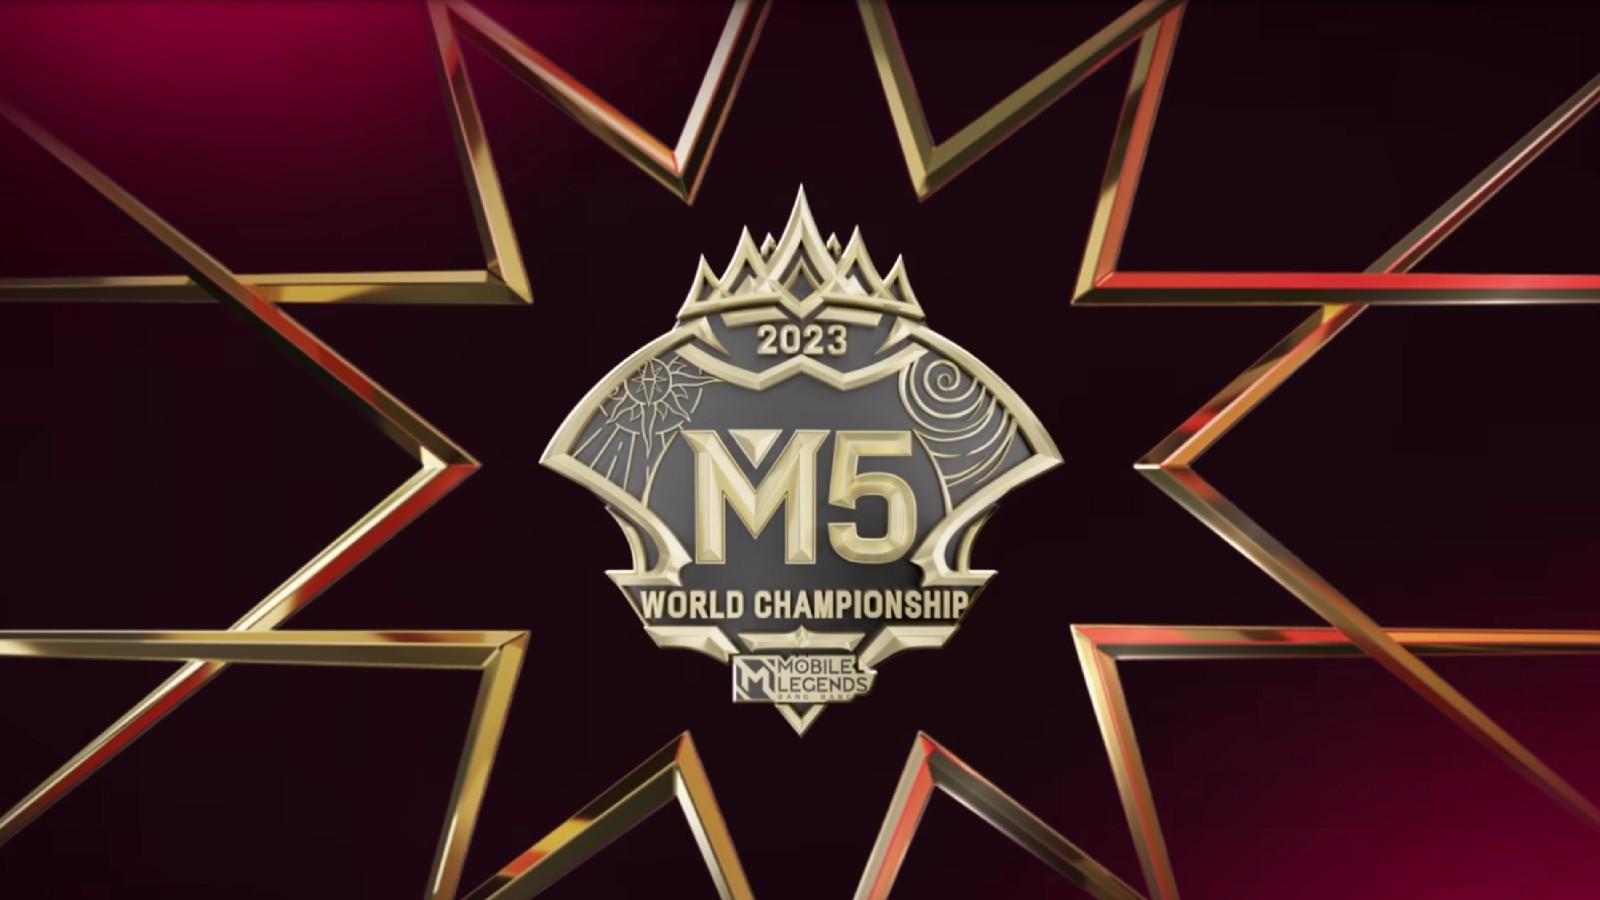 M5 World Championship: Dates, schedule, teams, prize & wildcard qualifier -  Dexerto